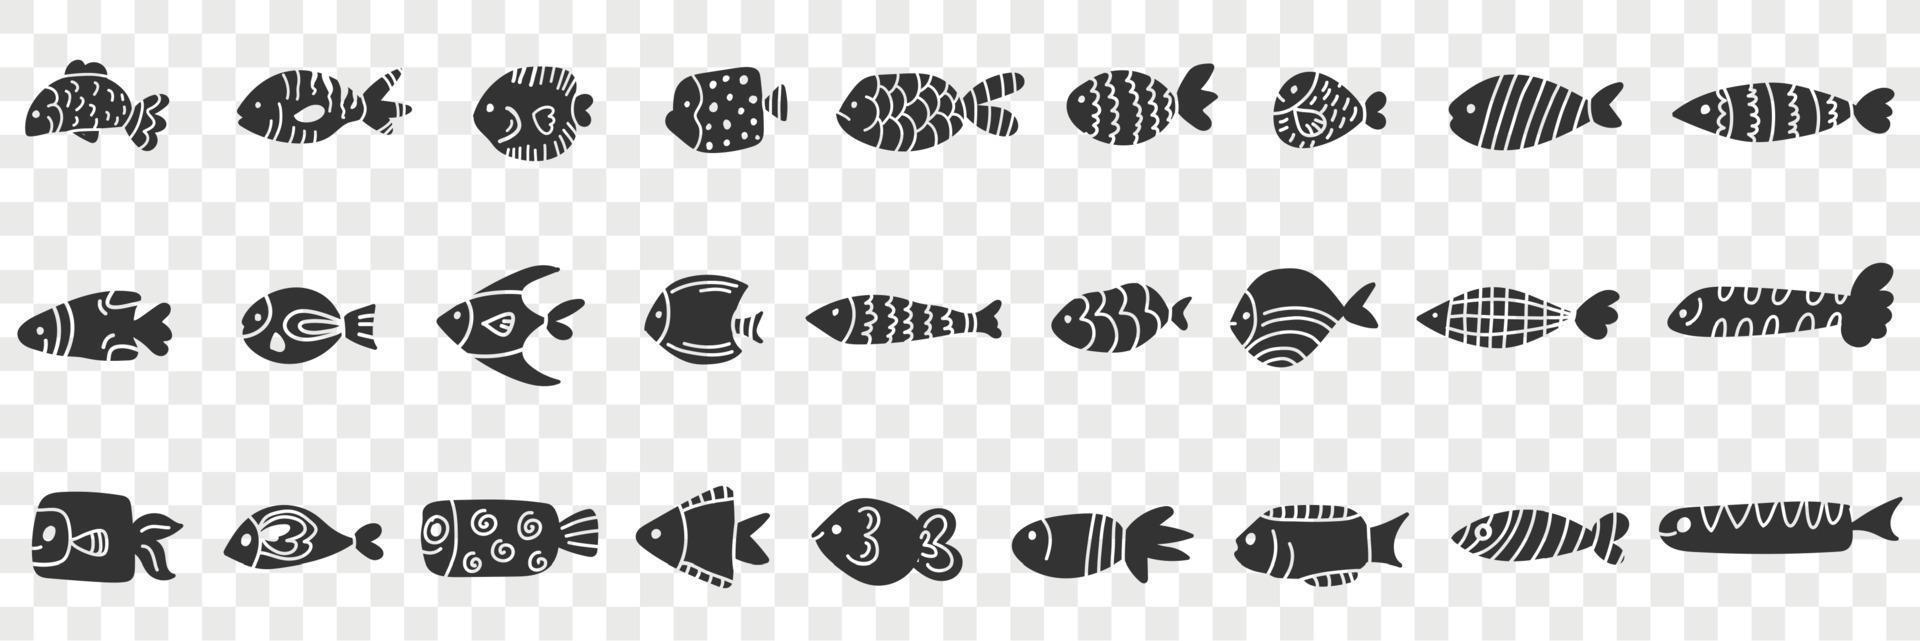 fiskar av olika mönster klotter uppsättning. samling av hand dragen olika fiskar av annorlunda mönster och former simning i hav isolerat på transparent bakgrund vektor